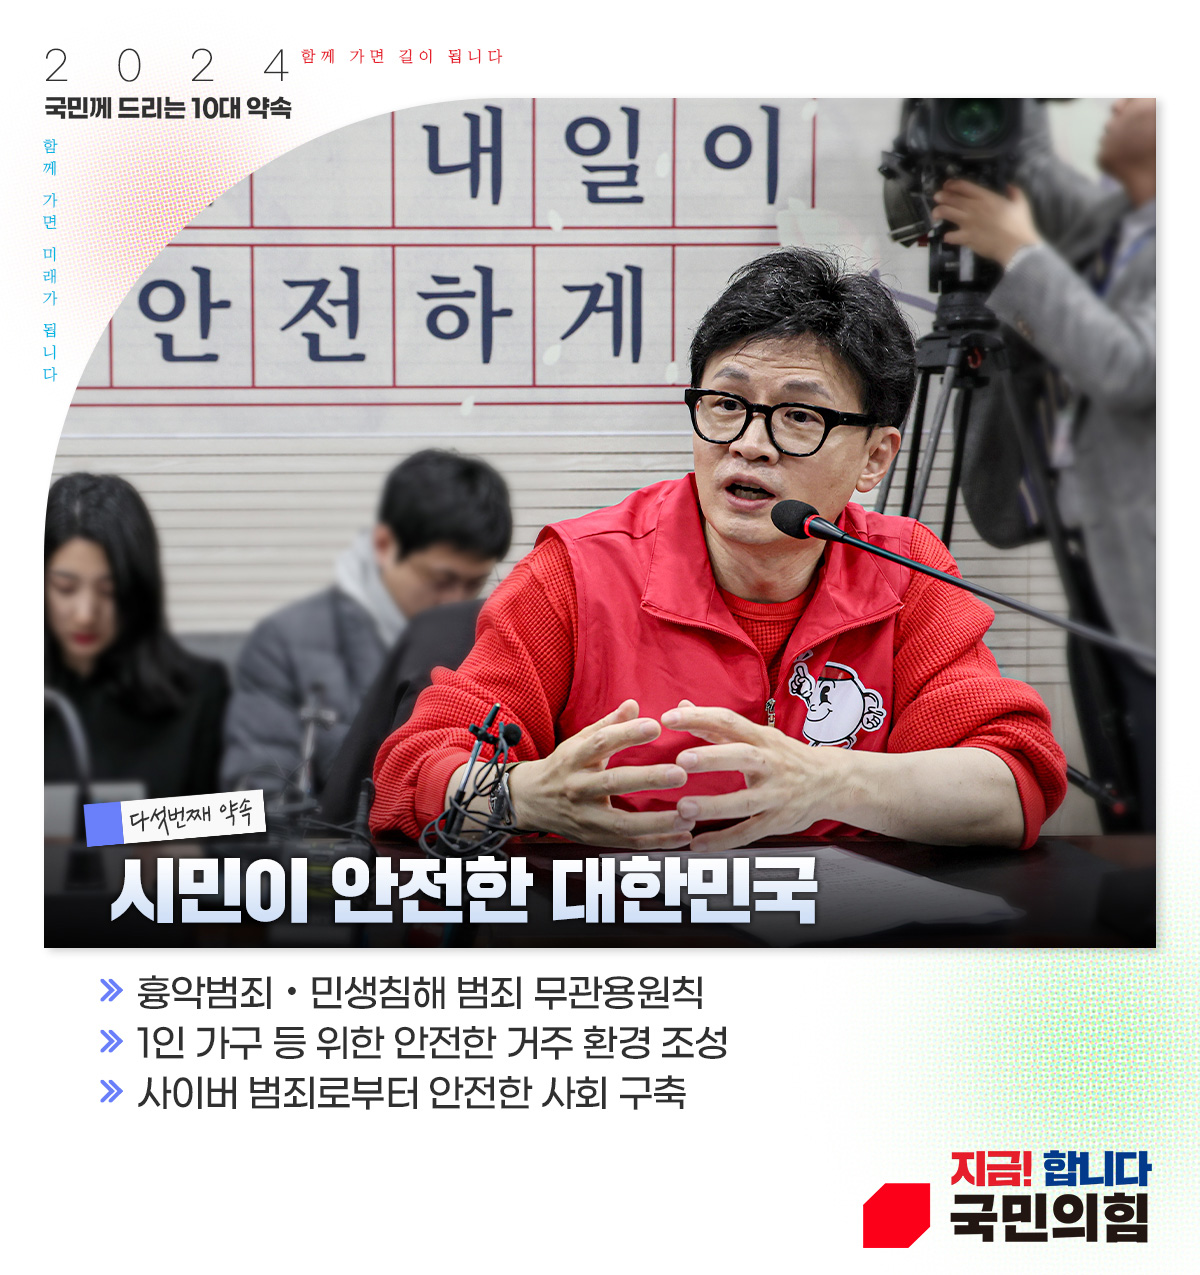 다섯번째 약속 : 시민이 안전한 대한민국